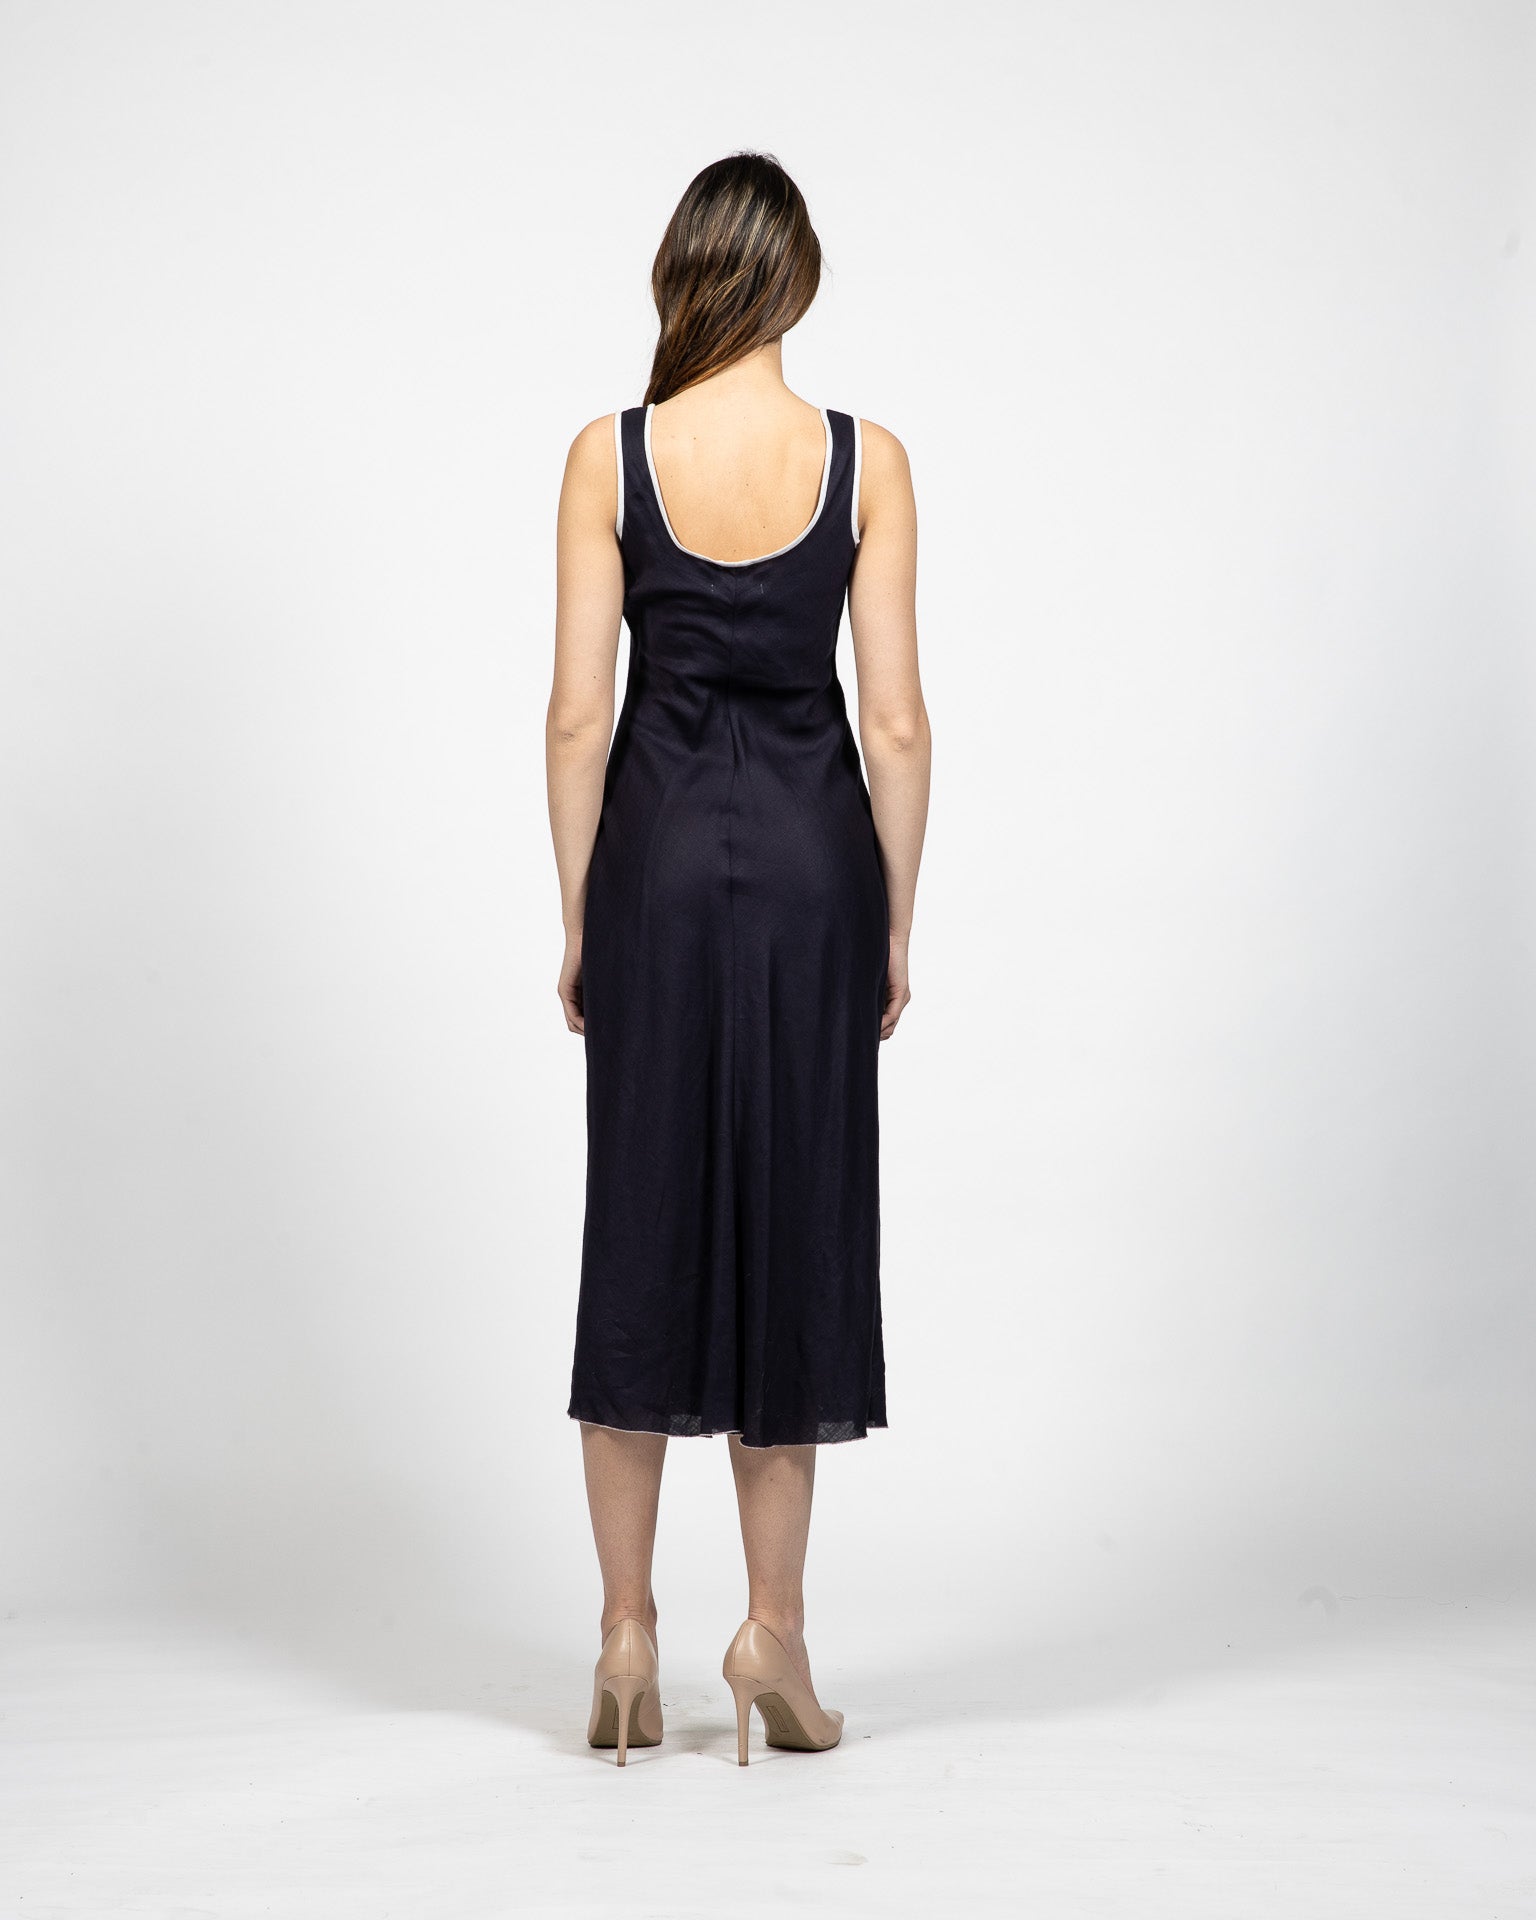 Scoop Neck Linen Dress - Back View - Samuel Vartan